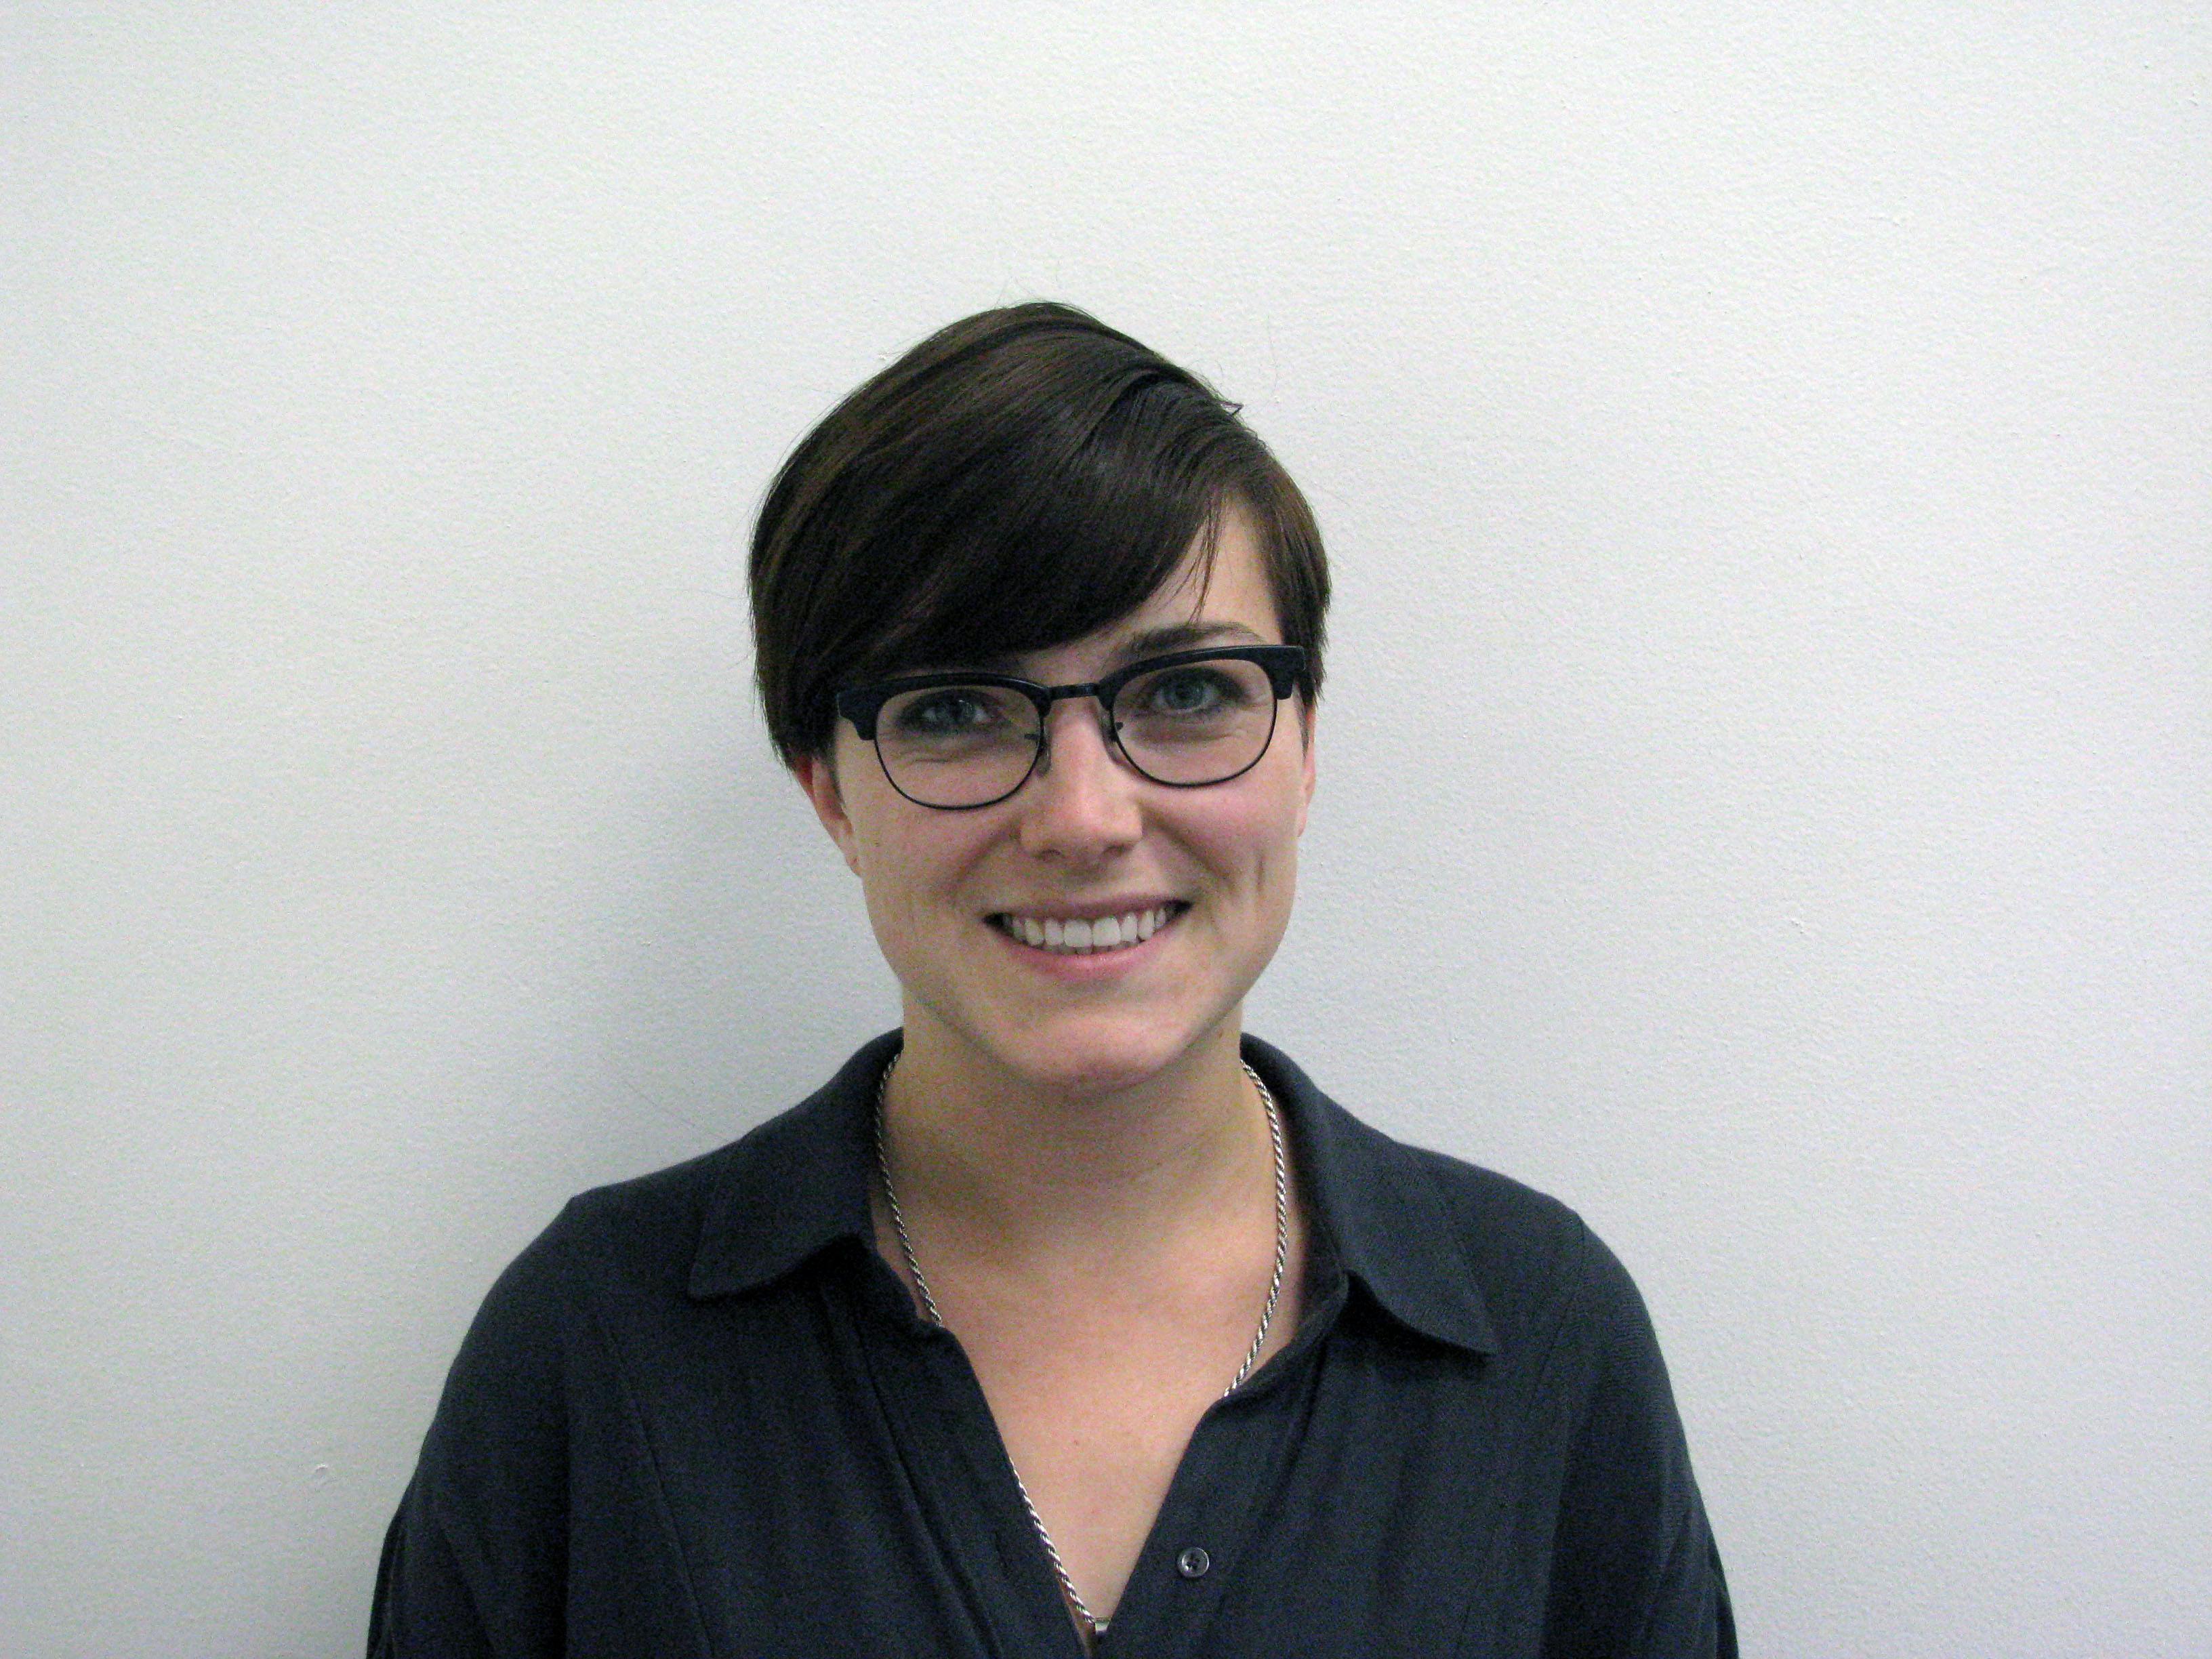 Team member, Veronika Stewart